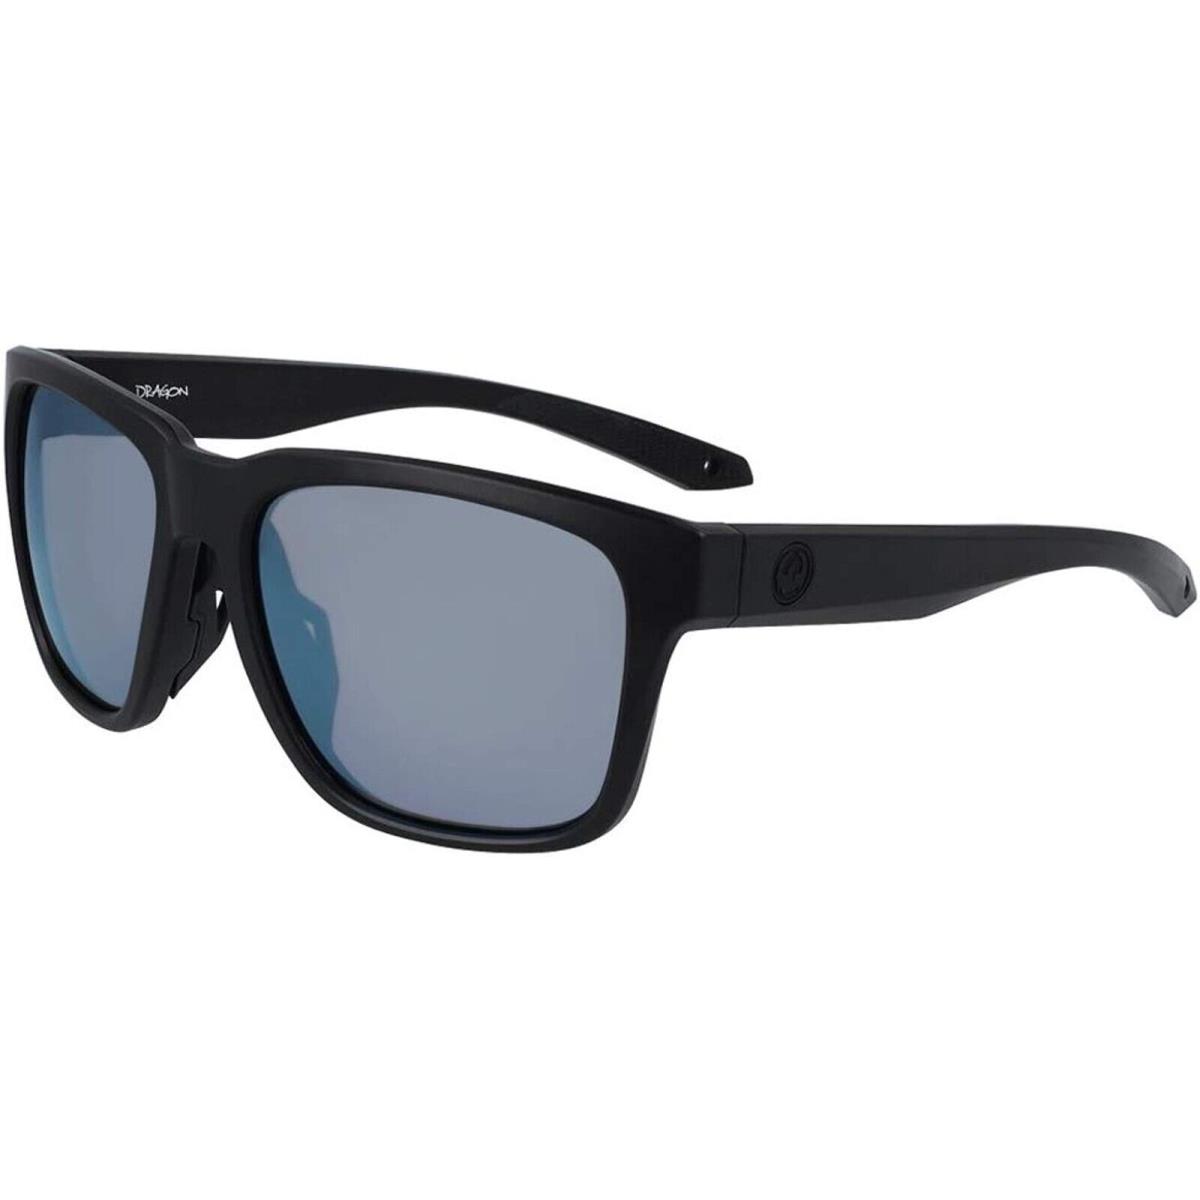 2022 Nwob Dragon Mariner Sunglasses Gray Lens Black Frame H20 Floatable UV